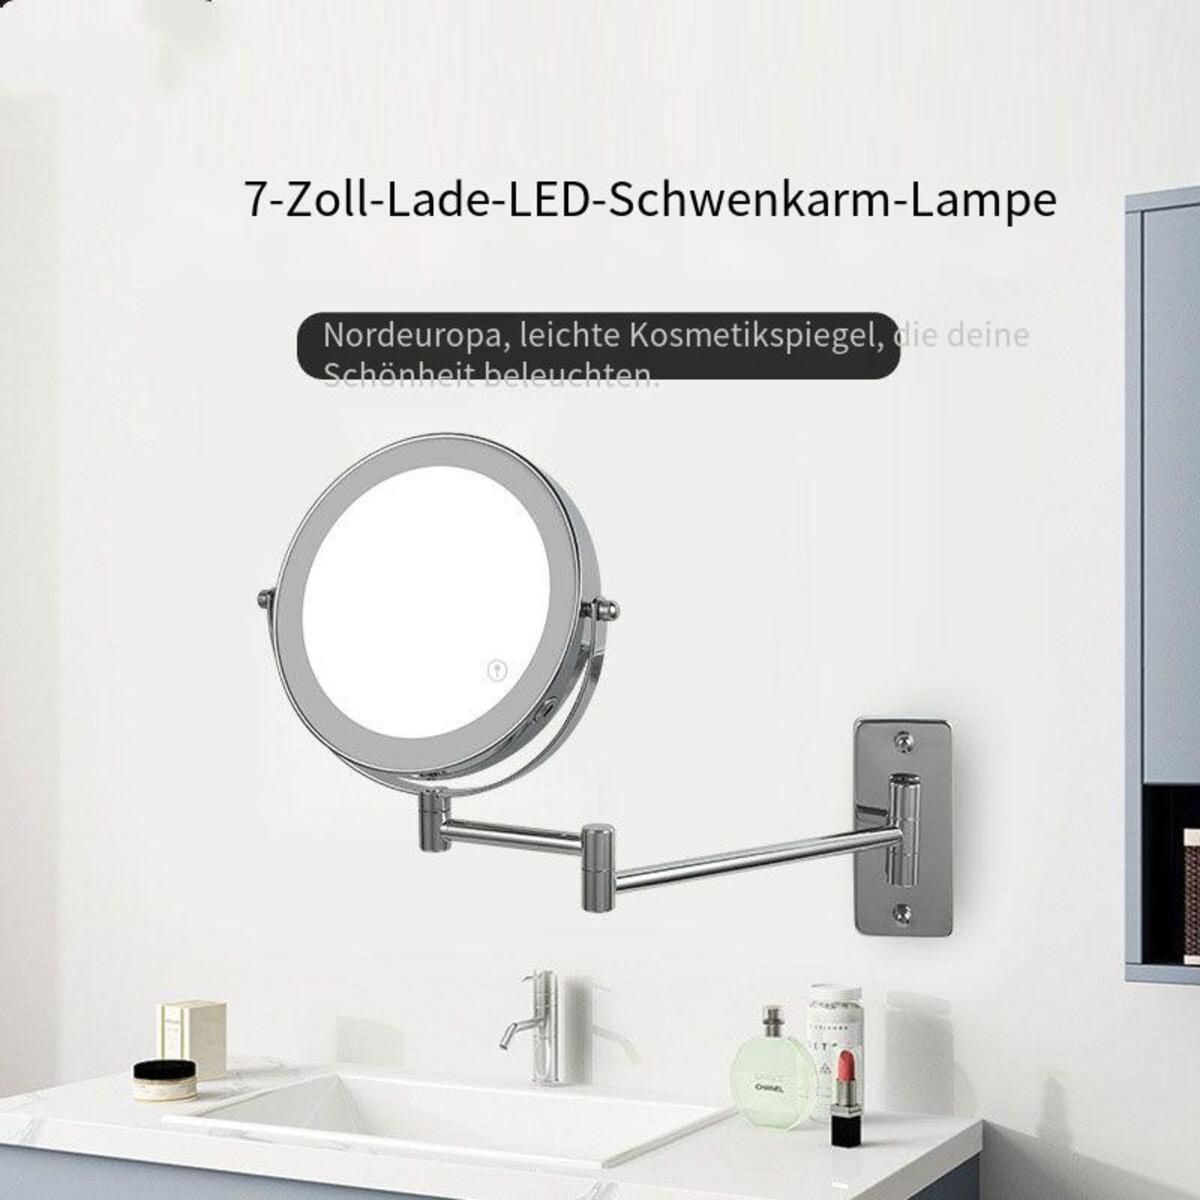 ELKUAIE Zusammenklappbar LED-Licht silver mit Kosmetikspiegel